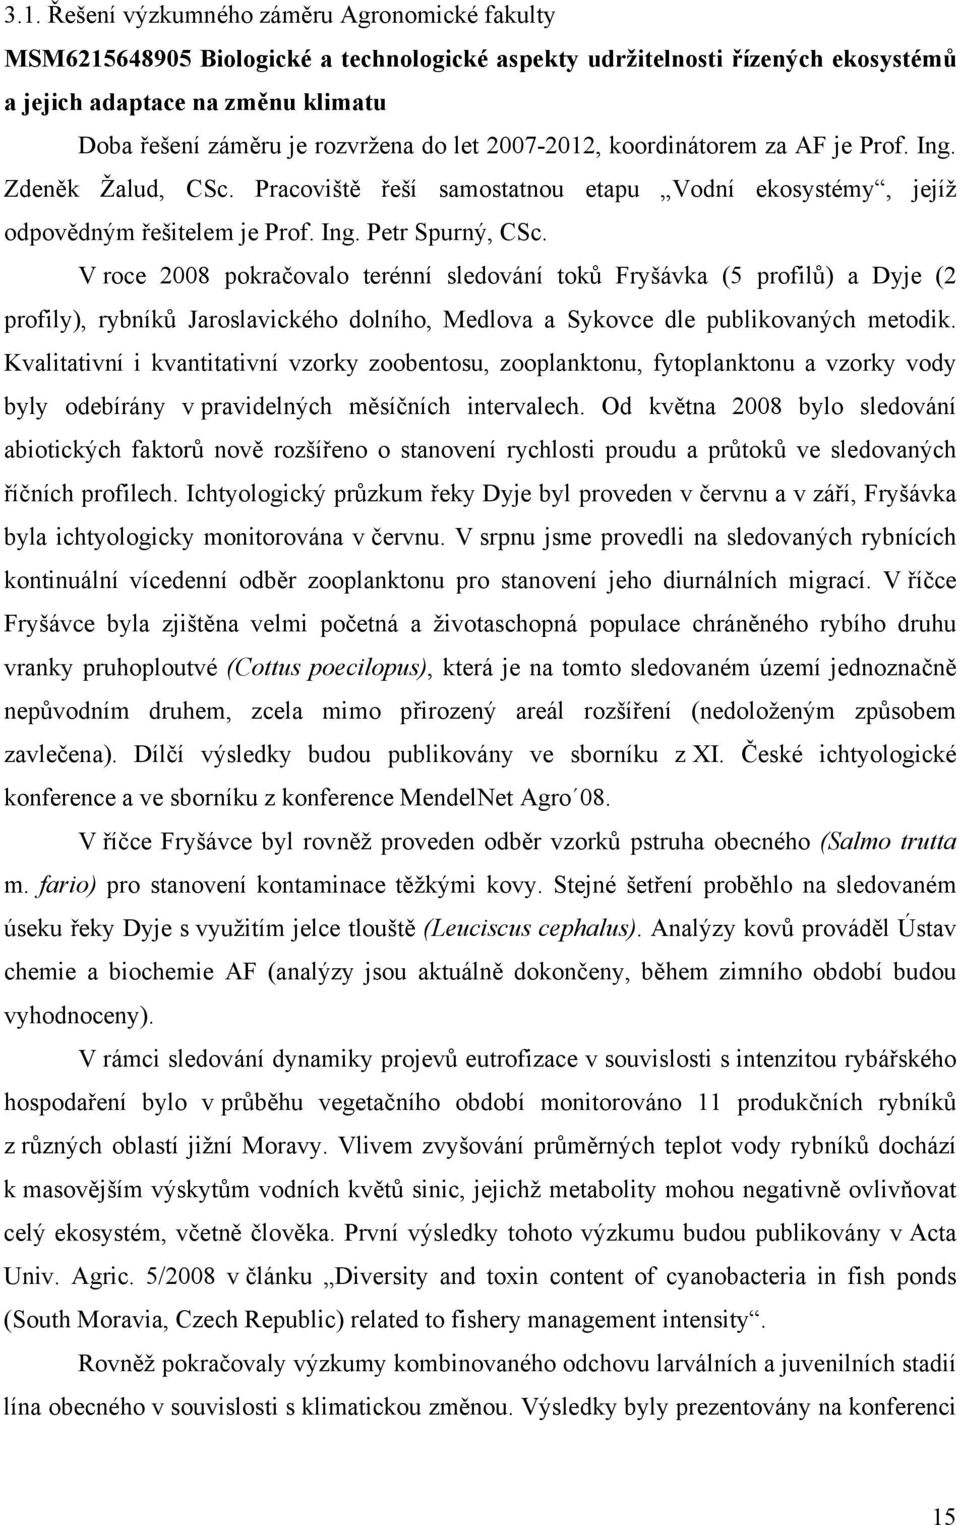 V roce 2008 pokračovalo terénní sledování toků Fryšávka (5 profilů) a Dyje (2 profily), rybníků Jaroslavického dolního, Medlova a Sykovce dle publikovaných metodik.